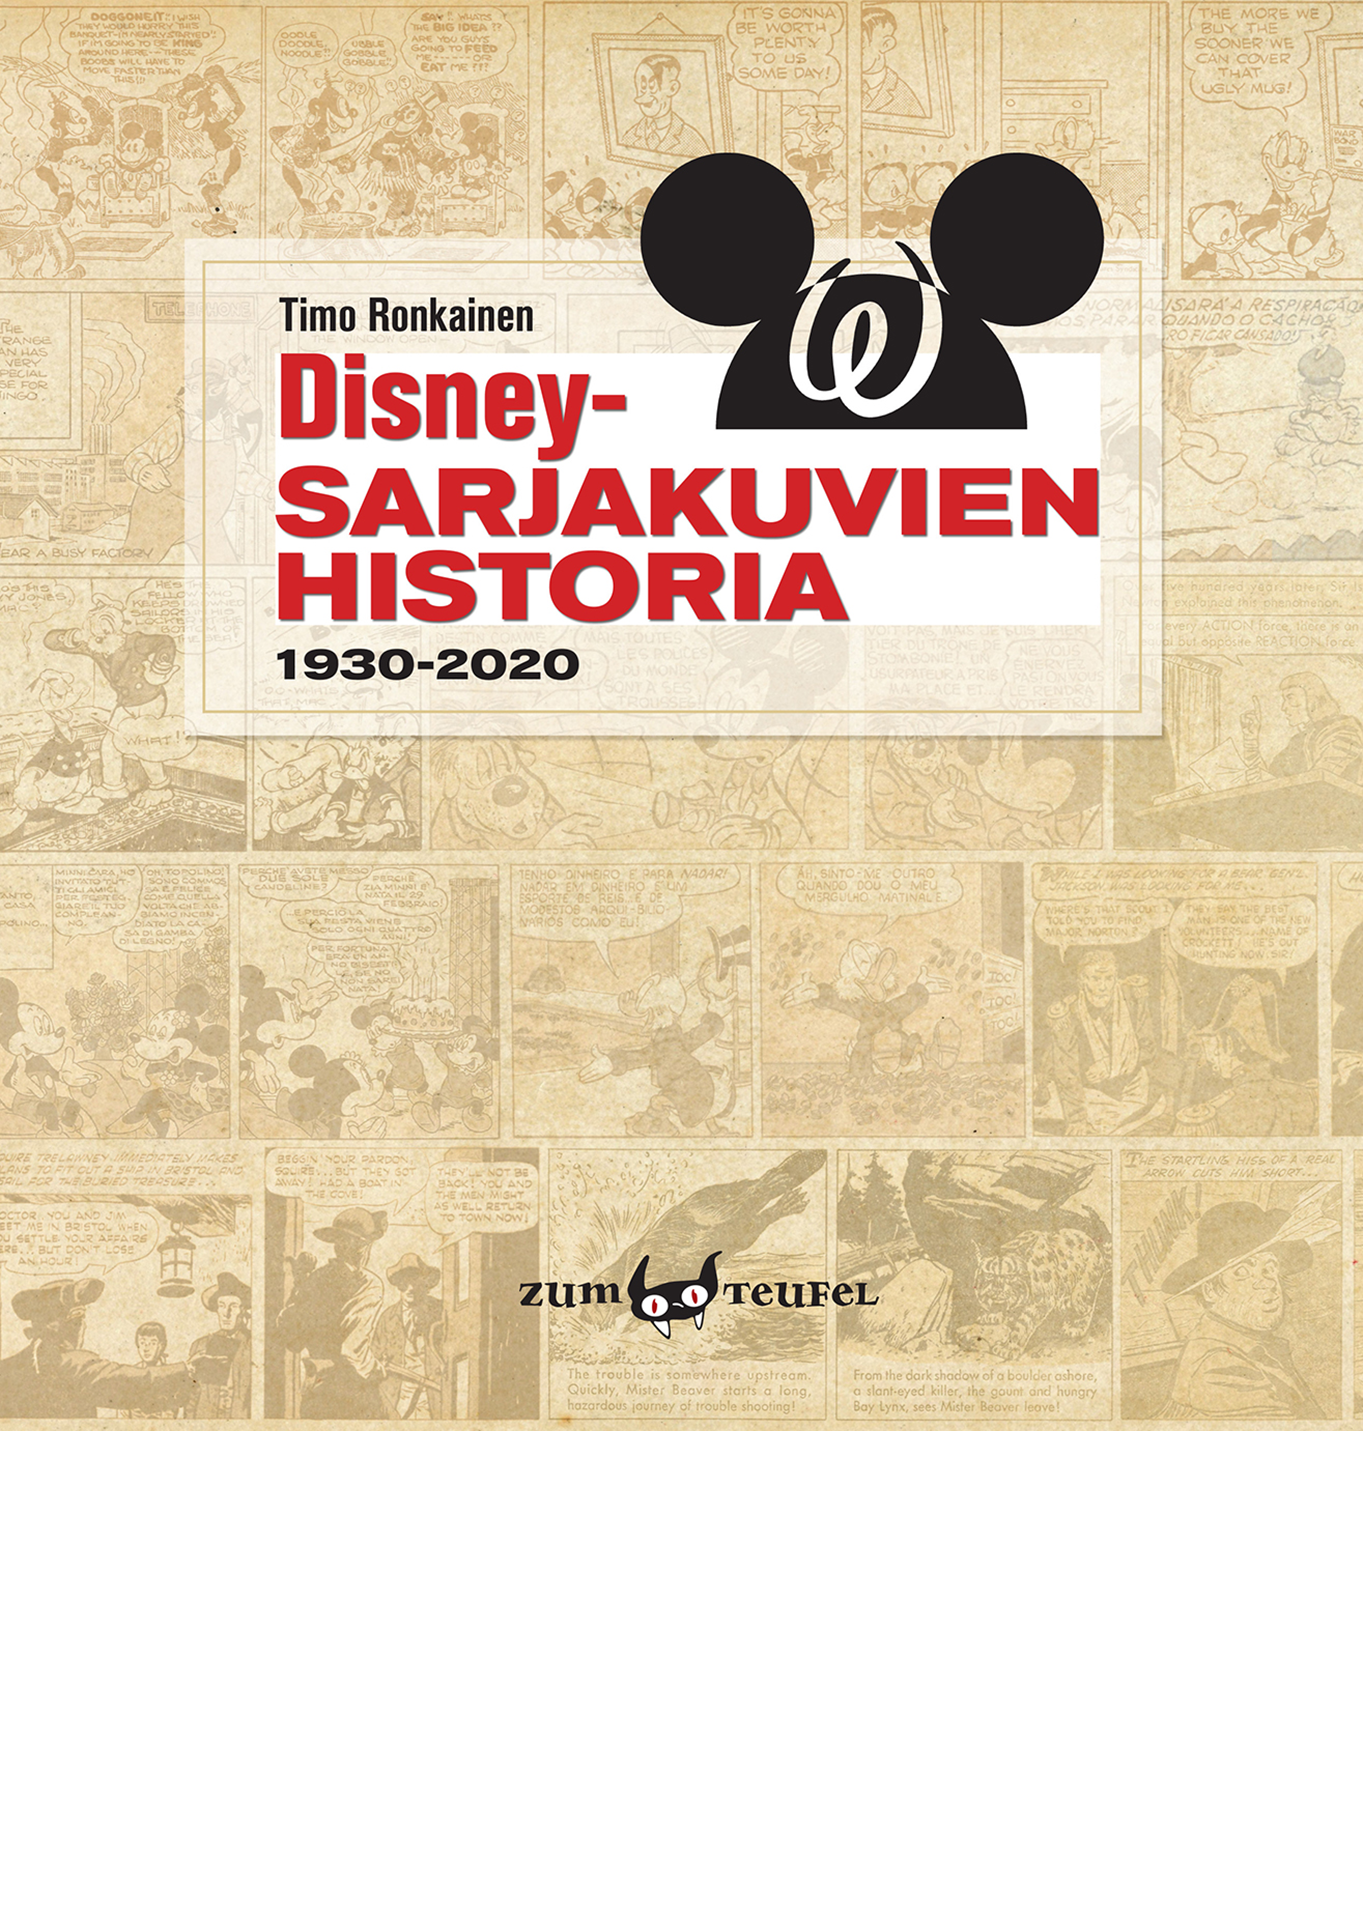 Disney-sarjakuvien historia - kanssi